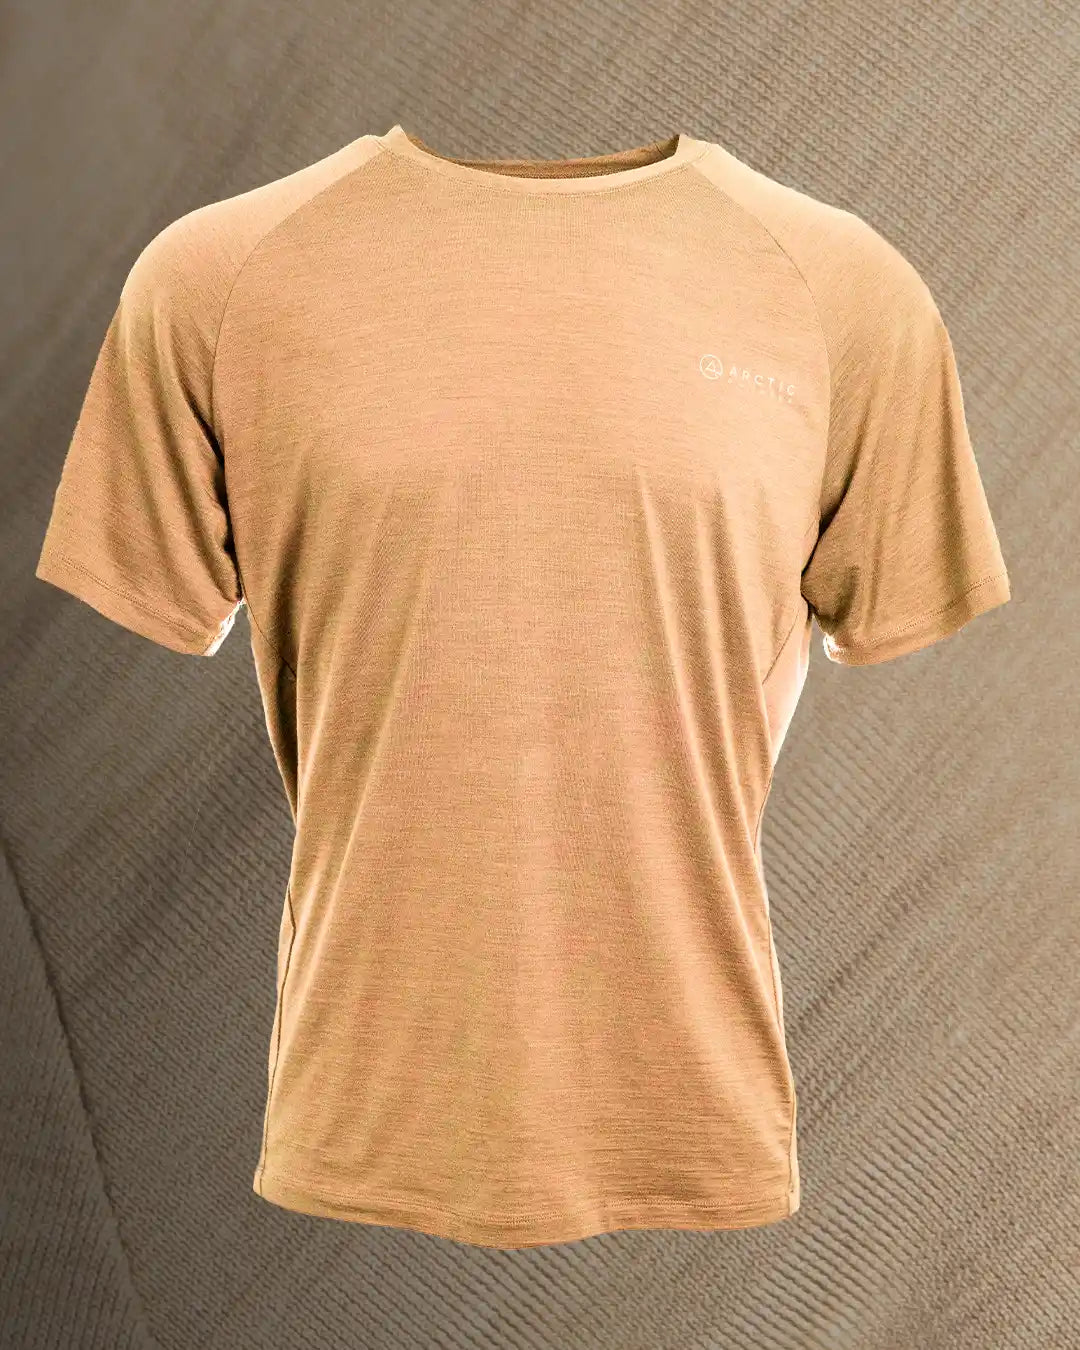 Produktbillede af sand merinould t-shirt